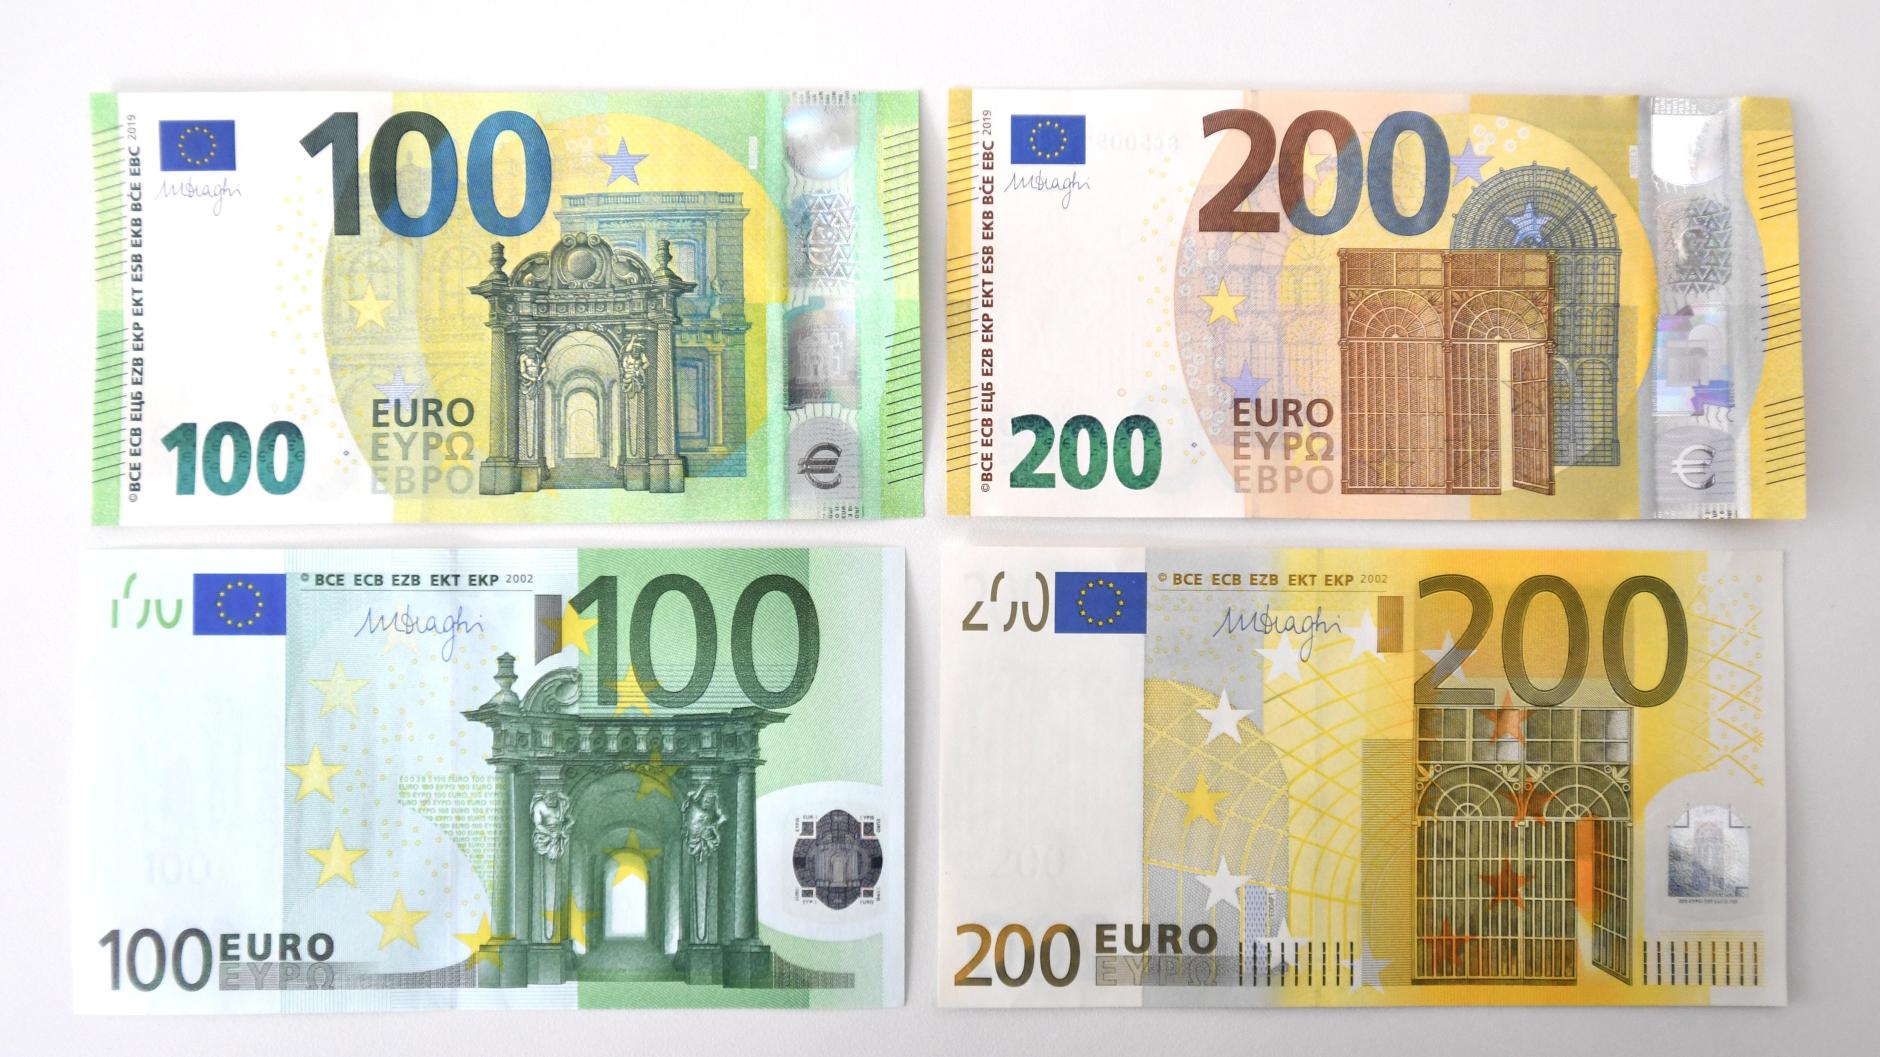 Размер евро купюры. Купюра 200 евро. 100 Евро купюра. 100 Евро купюра в Германии. Купюра 200 евро как выглядит.